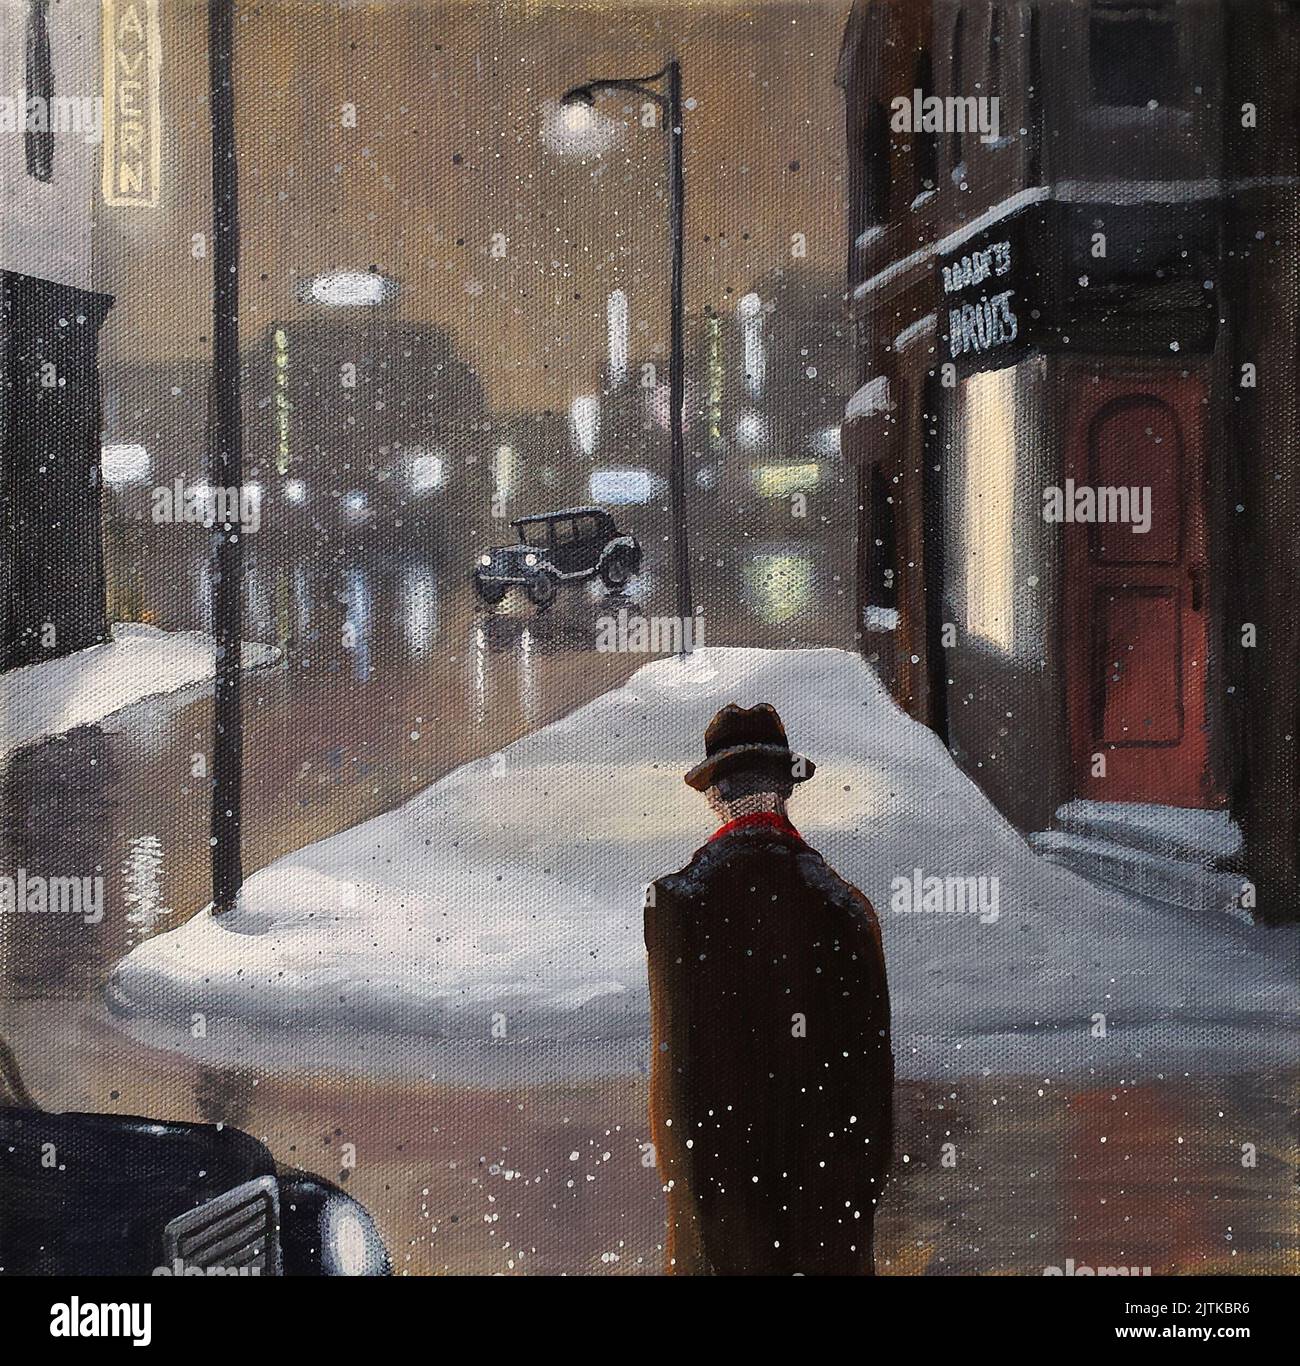 Geheimnisvolle, im Film Noir-Stil gehaltene Szene eines Fedora-tragenden Mannes, der in einer verschneiten Nacht die Straße überquert, in einer Innenstadtumgebung. Stockfoto